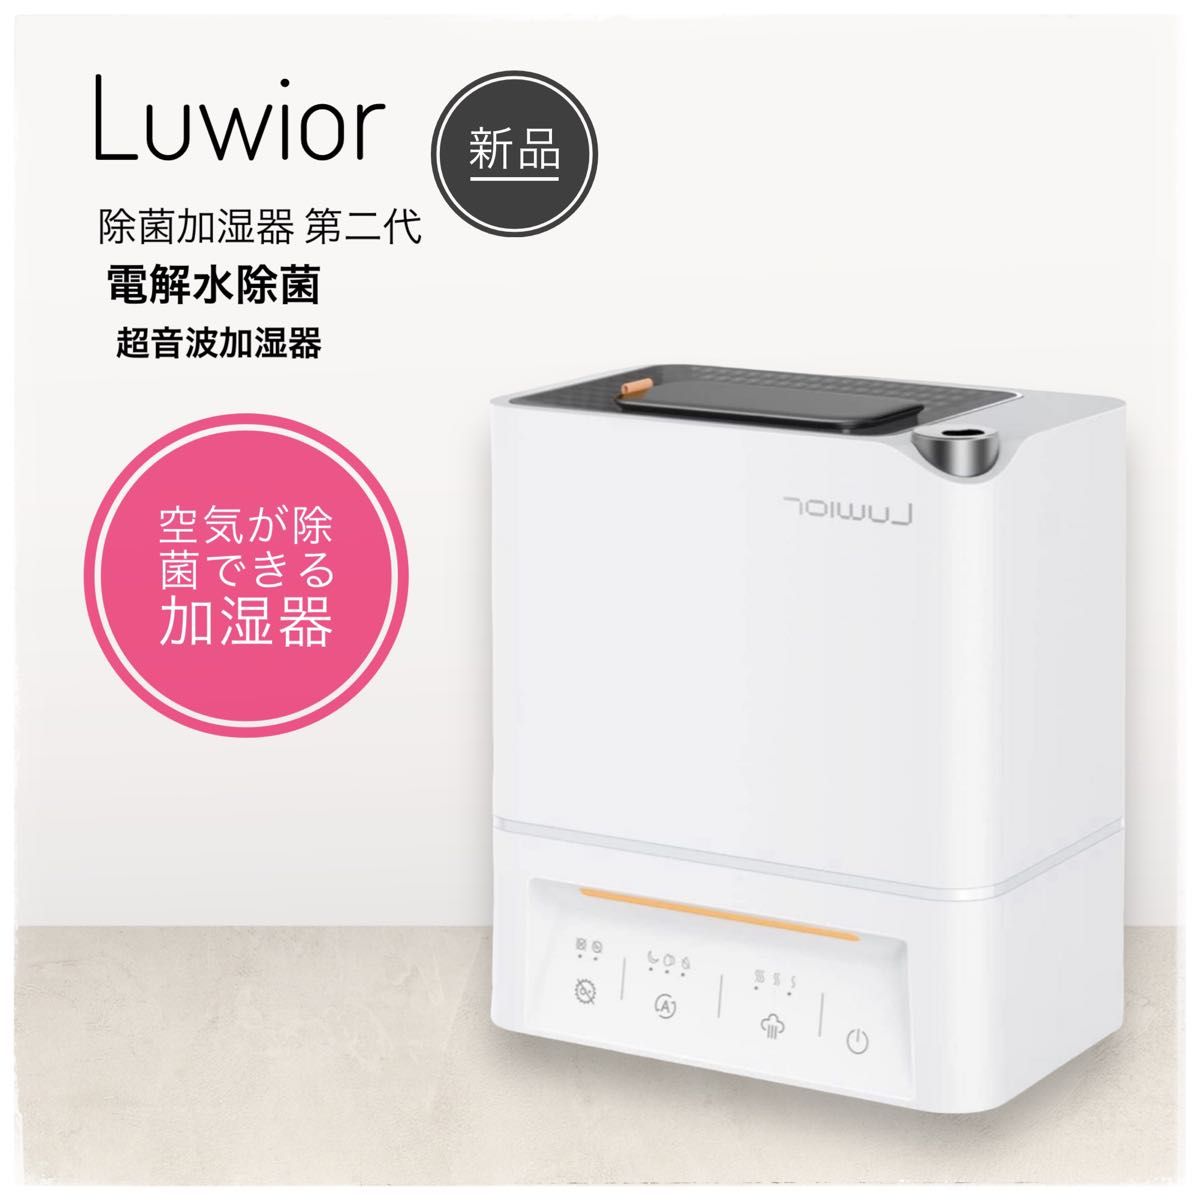 特別SALE 【新品 未開封】加湿器 卓上 第二代 Luwior 電解水除菌 超 